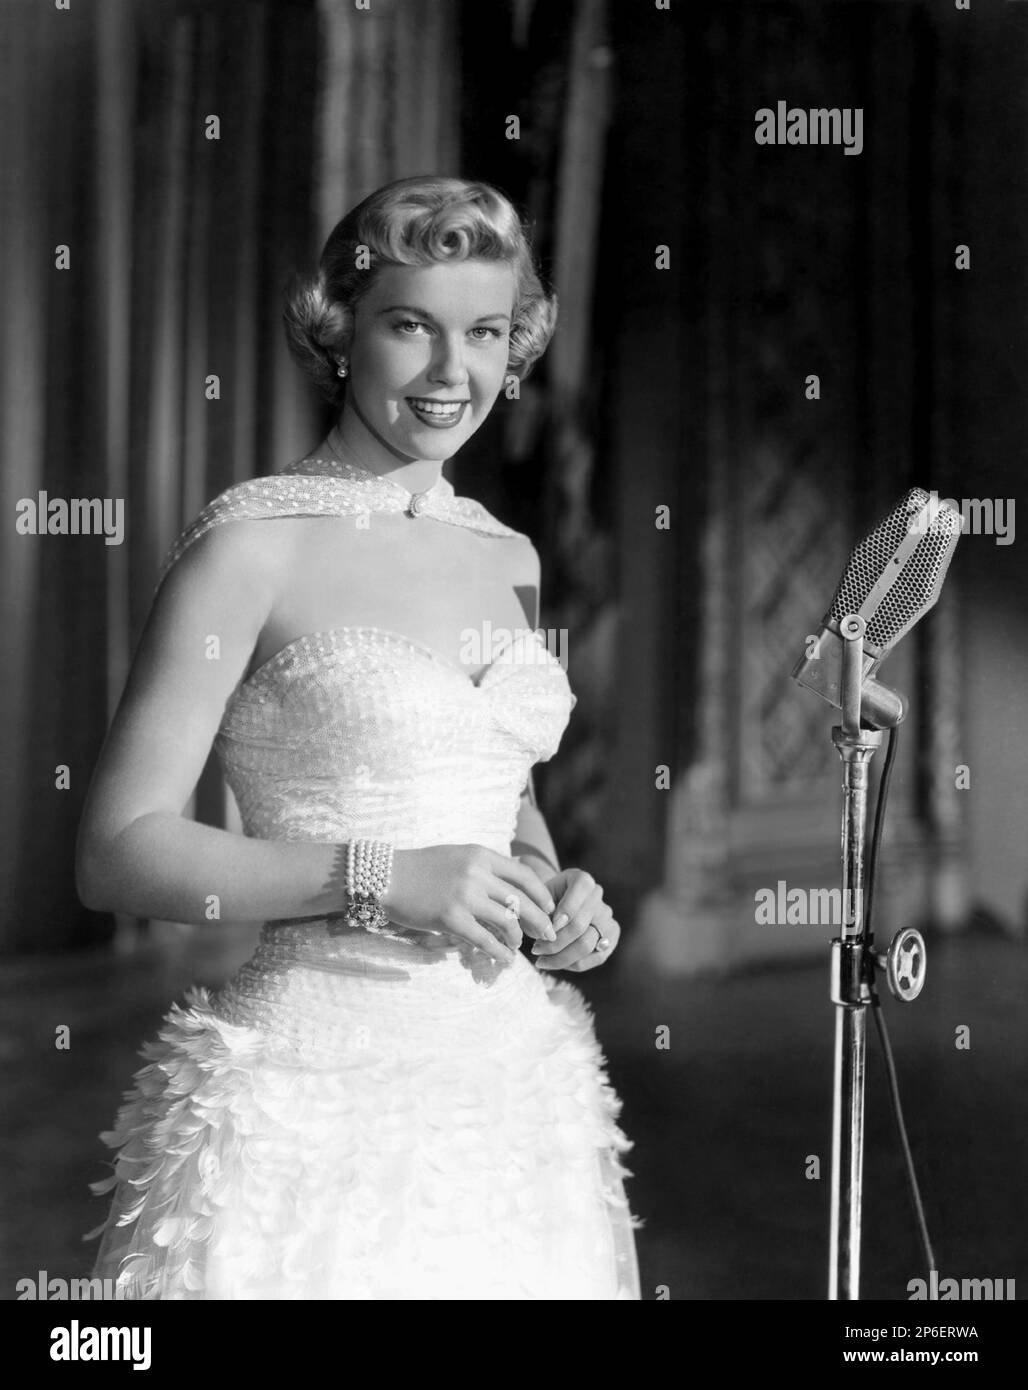 1953 ca  : The actress and singer DORIS DAY ( real name Doris Mary Ann Kappelhoff , born 3 April 1924 Cincinnati, Ohio, USA ) in a pubblicity movie still   - FILM - MOVIE - attrice cimatografica - blonde - bionda - scollatura - decollete' - neckopening - microfono - microphone - braccialetto - bracelet - pearls - perle - jewels - jewellery - gioiello - gioielli - bijoux - smile - sorriso  ----  Archivio GBB Stock Photo